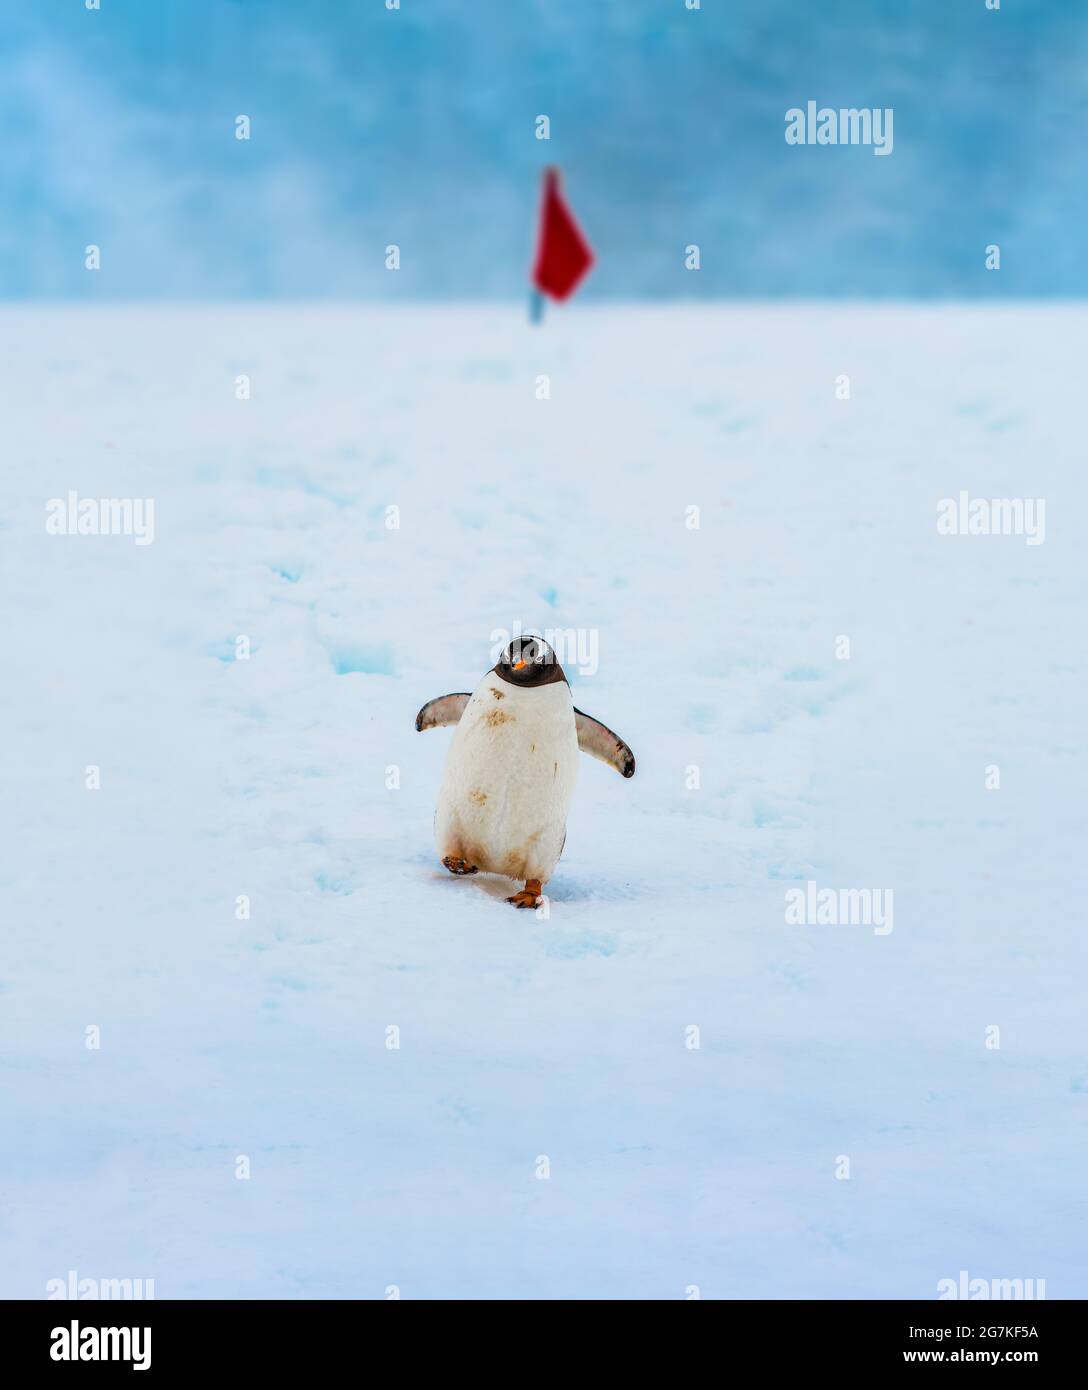 Pinguino Gentoo nativo di isole sub-antartiche dove temperature fredde consentono condizioni ideali di allevamento, foraggio e nidificazione. Foto Stock